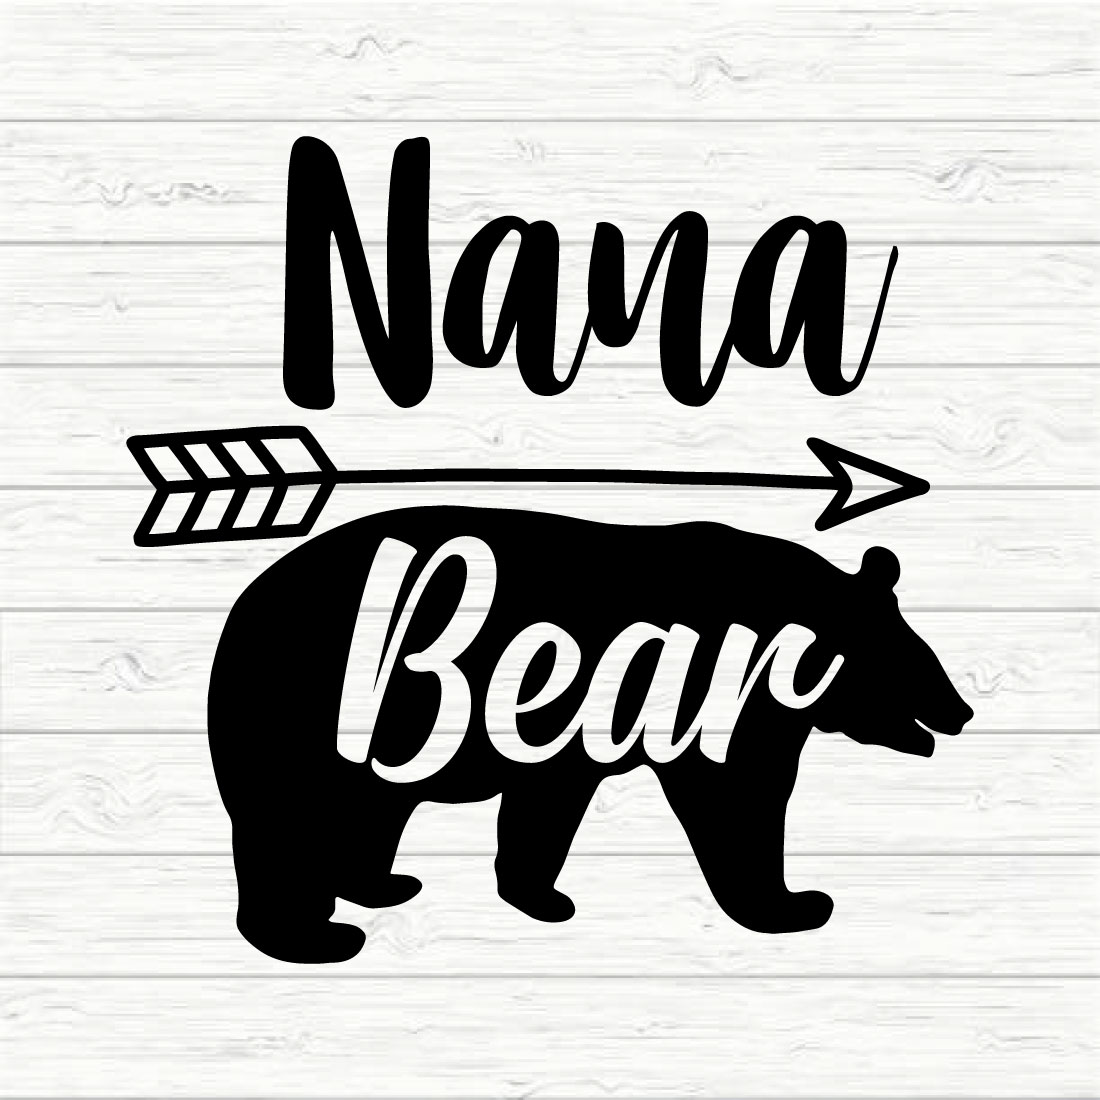 Nana Bear preview image.